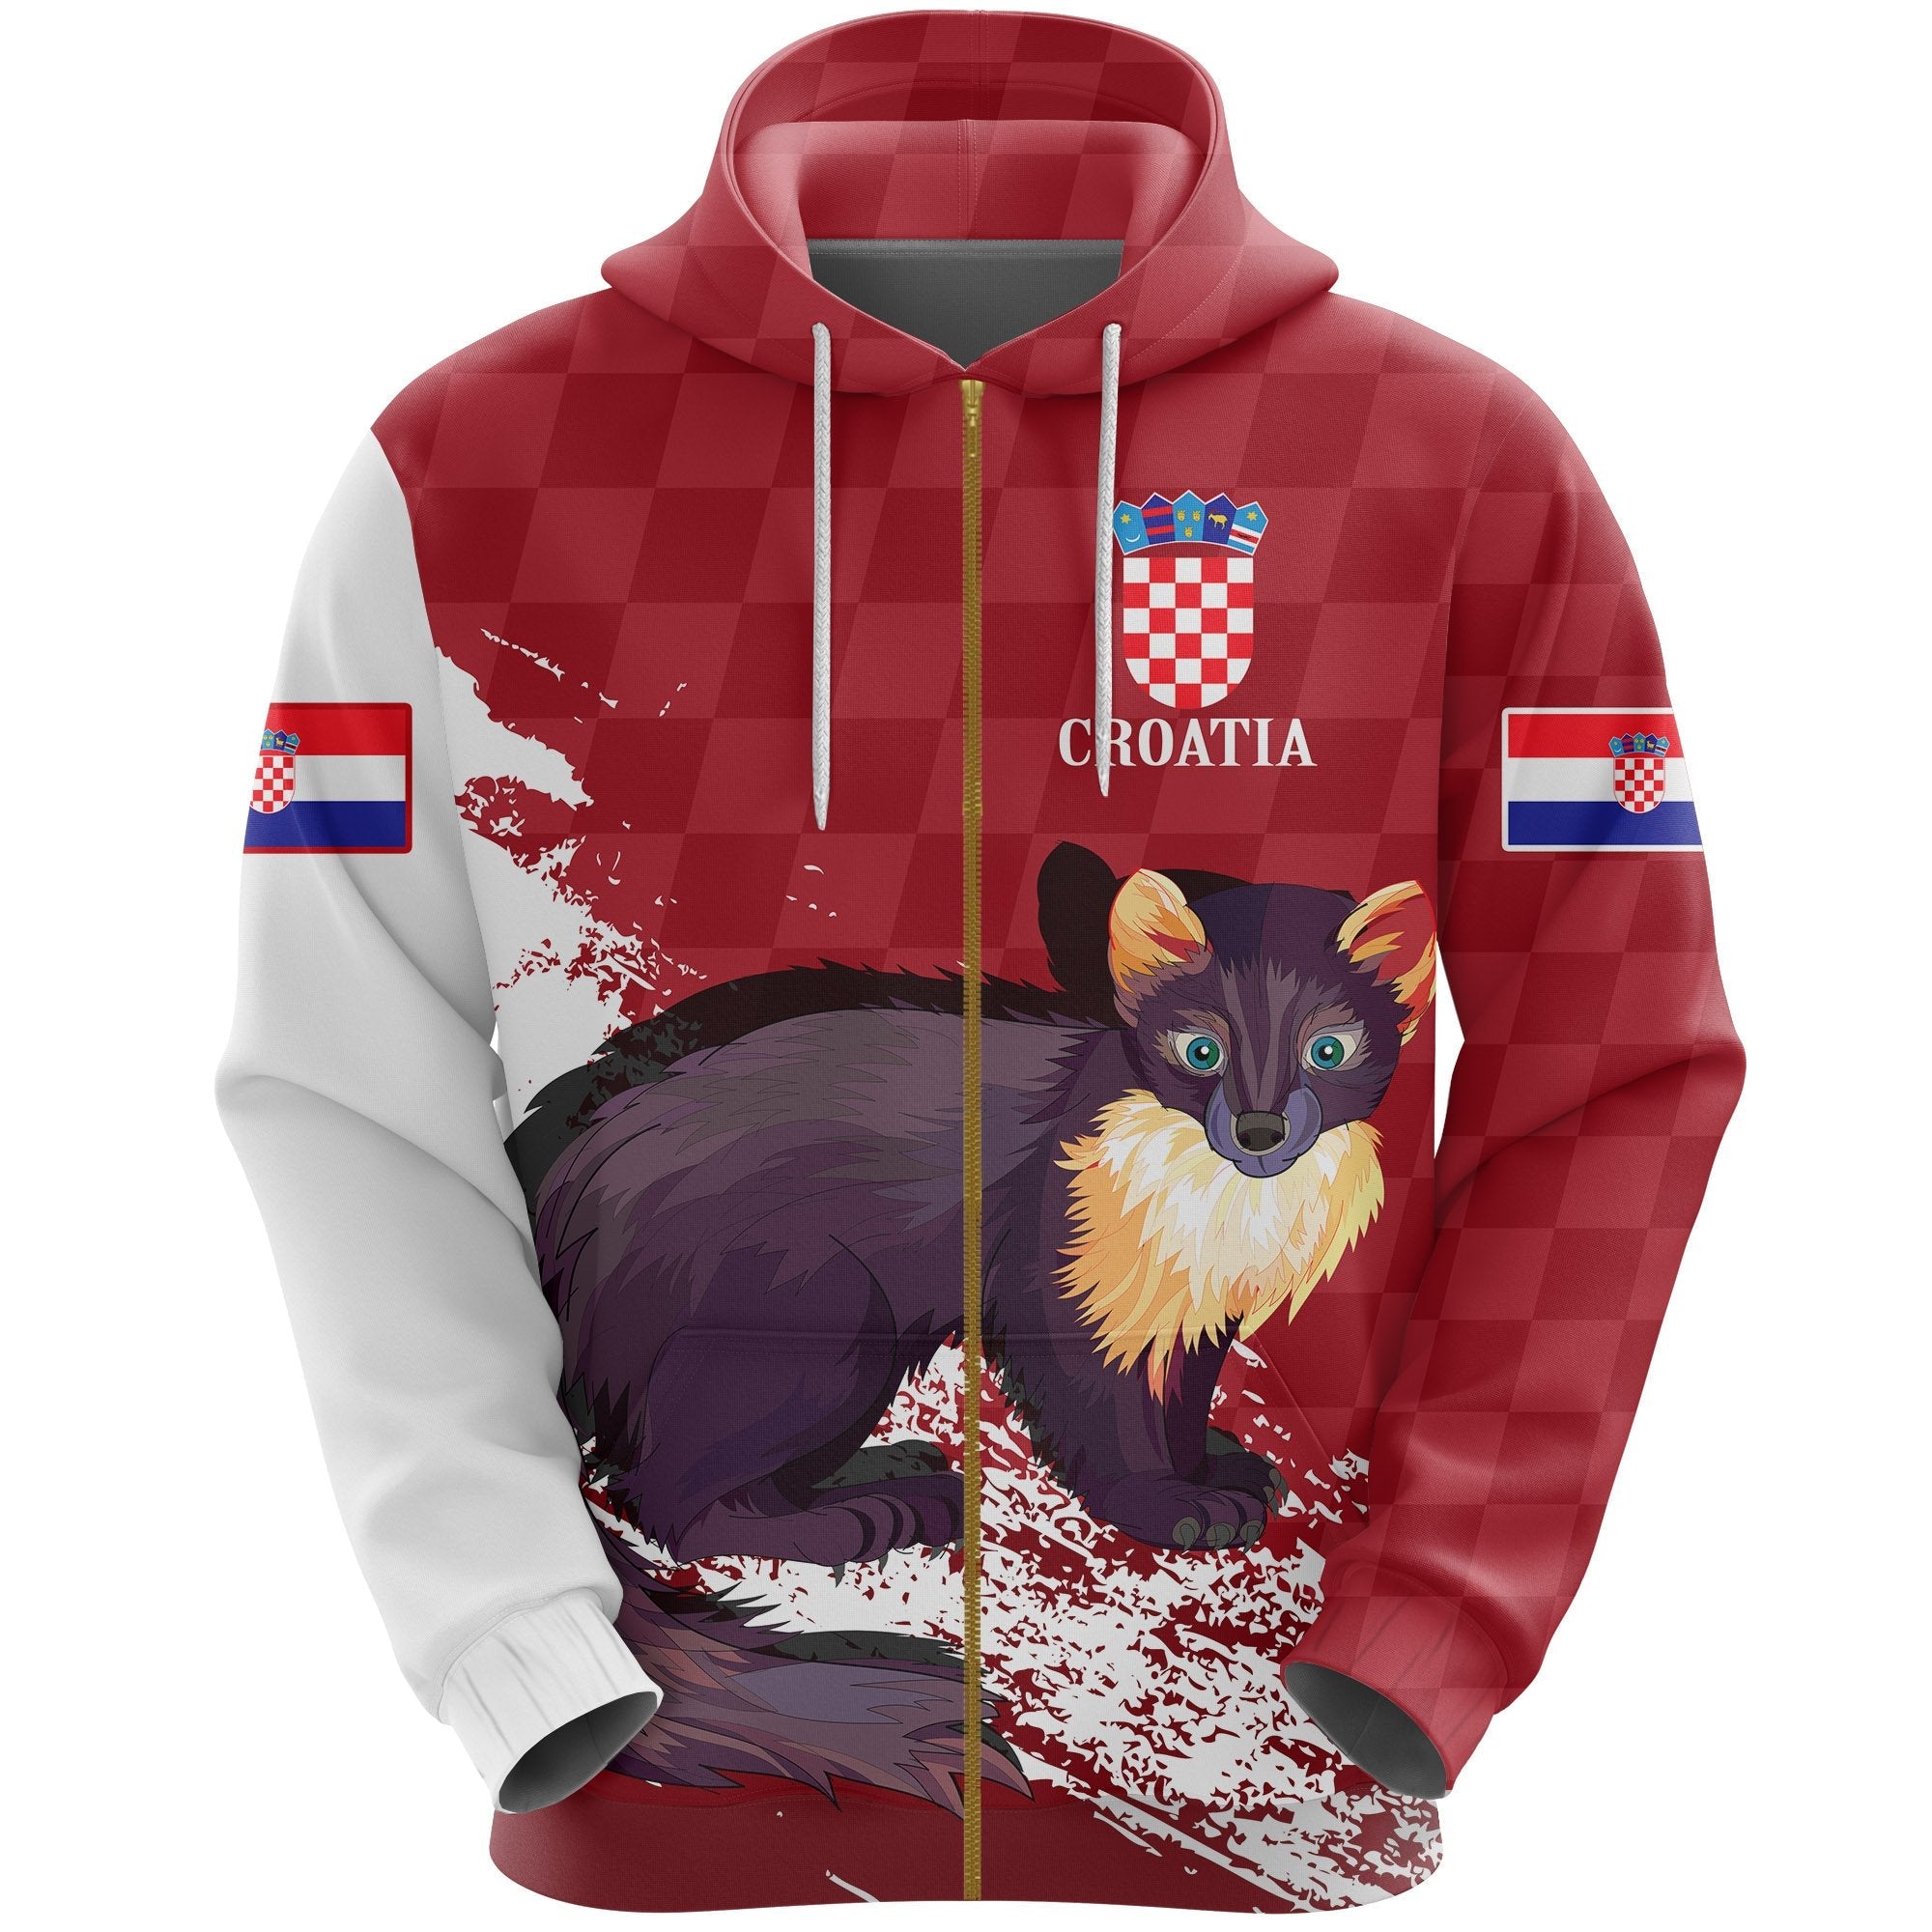 hrvatska-croatia-zipper-hoodie-marten